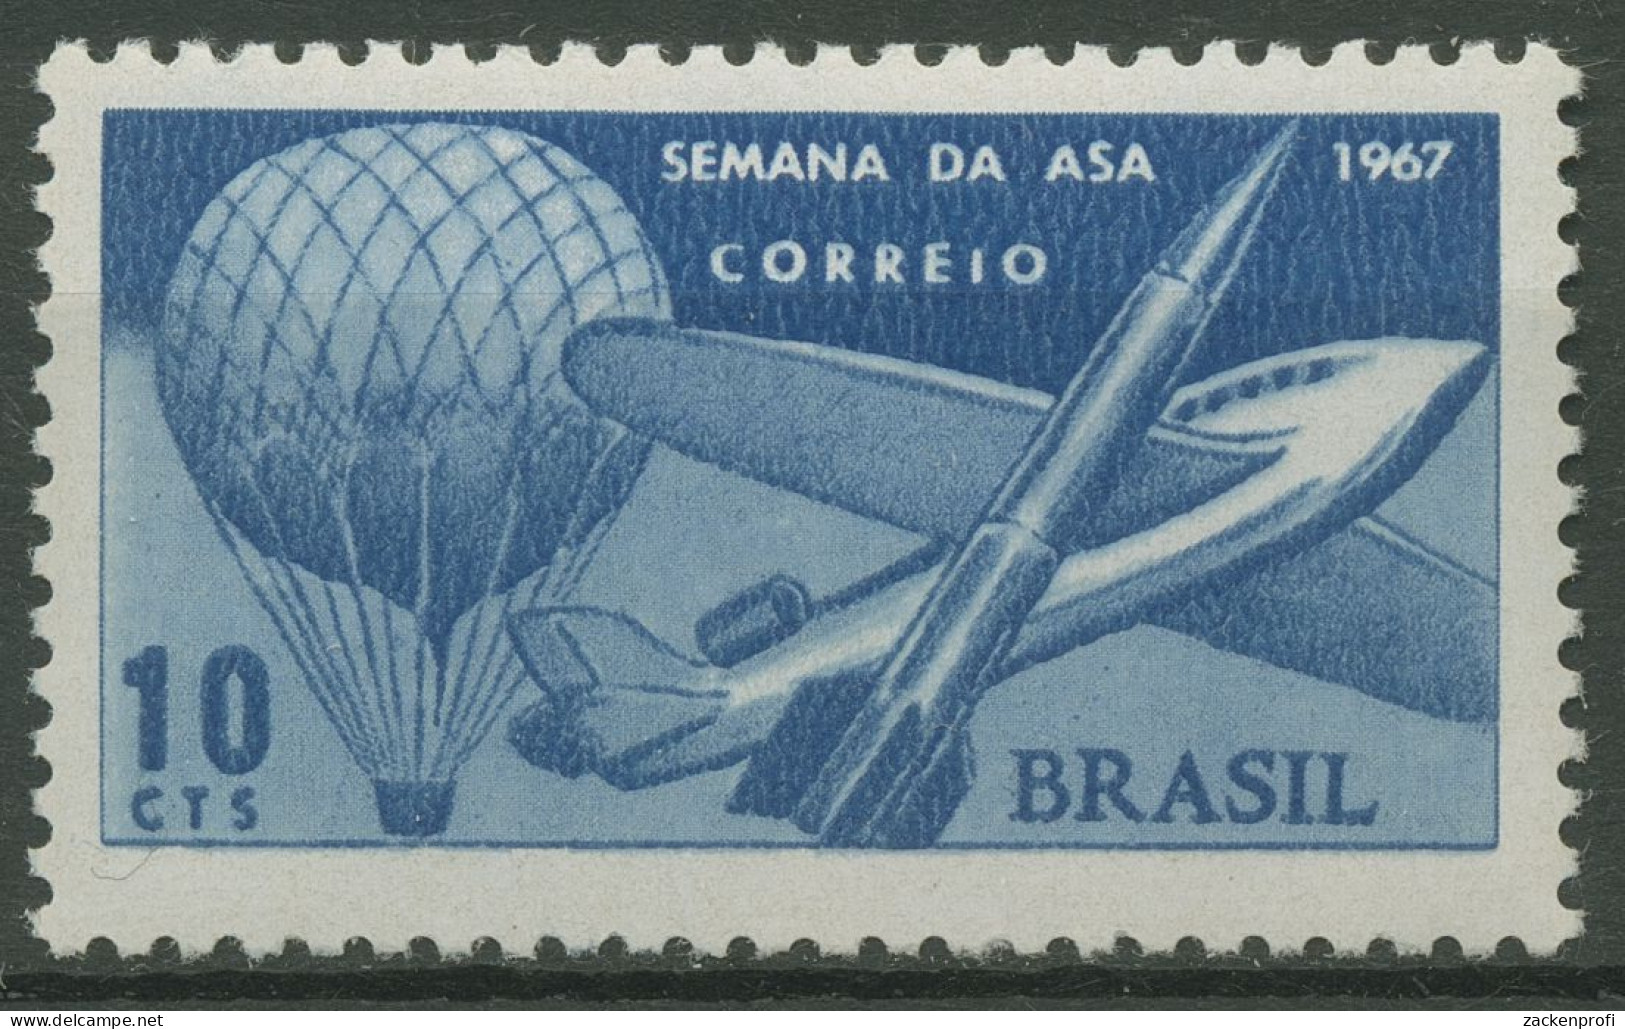 Brasilien 1967 Flugwoche Ballon Flugzeug Rakete 1151 Postfrisch - Unused Stamps